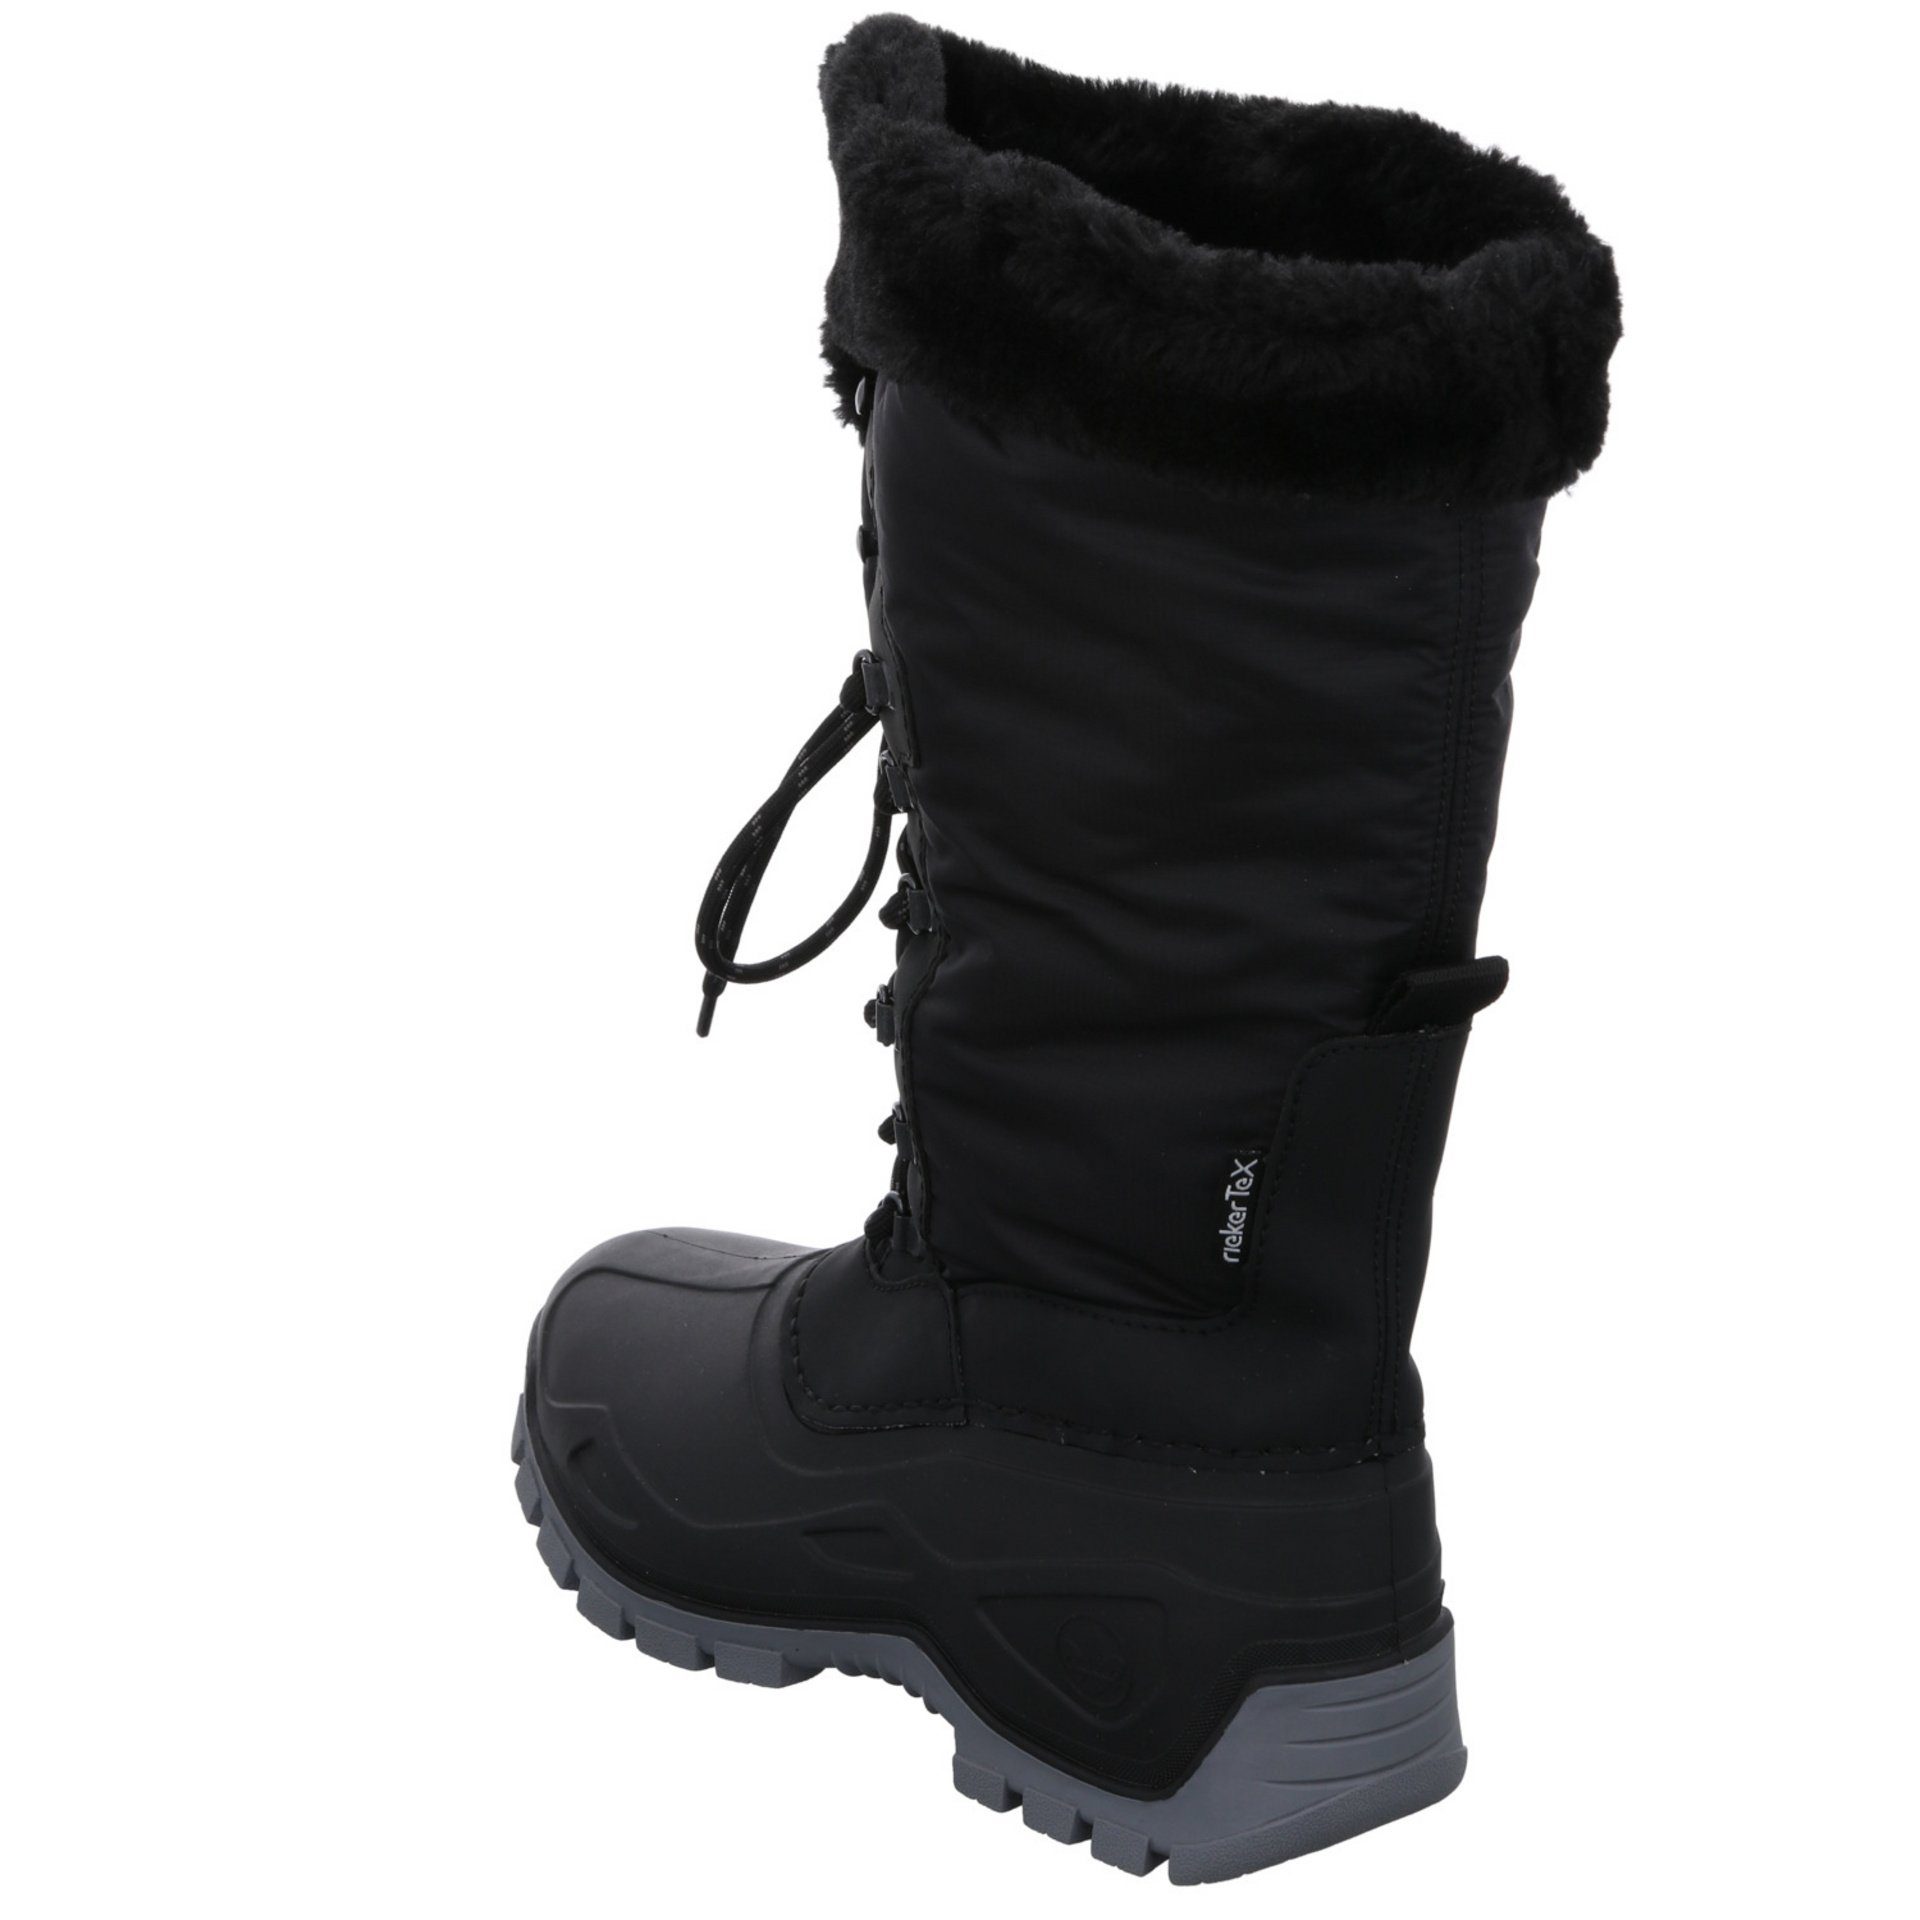 Freizeit Schuhe Snowboots Damen schwarz/schwarz/nero Boots Winter Synthetikkombination Rieker Snowboots